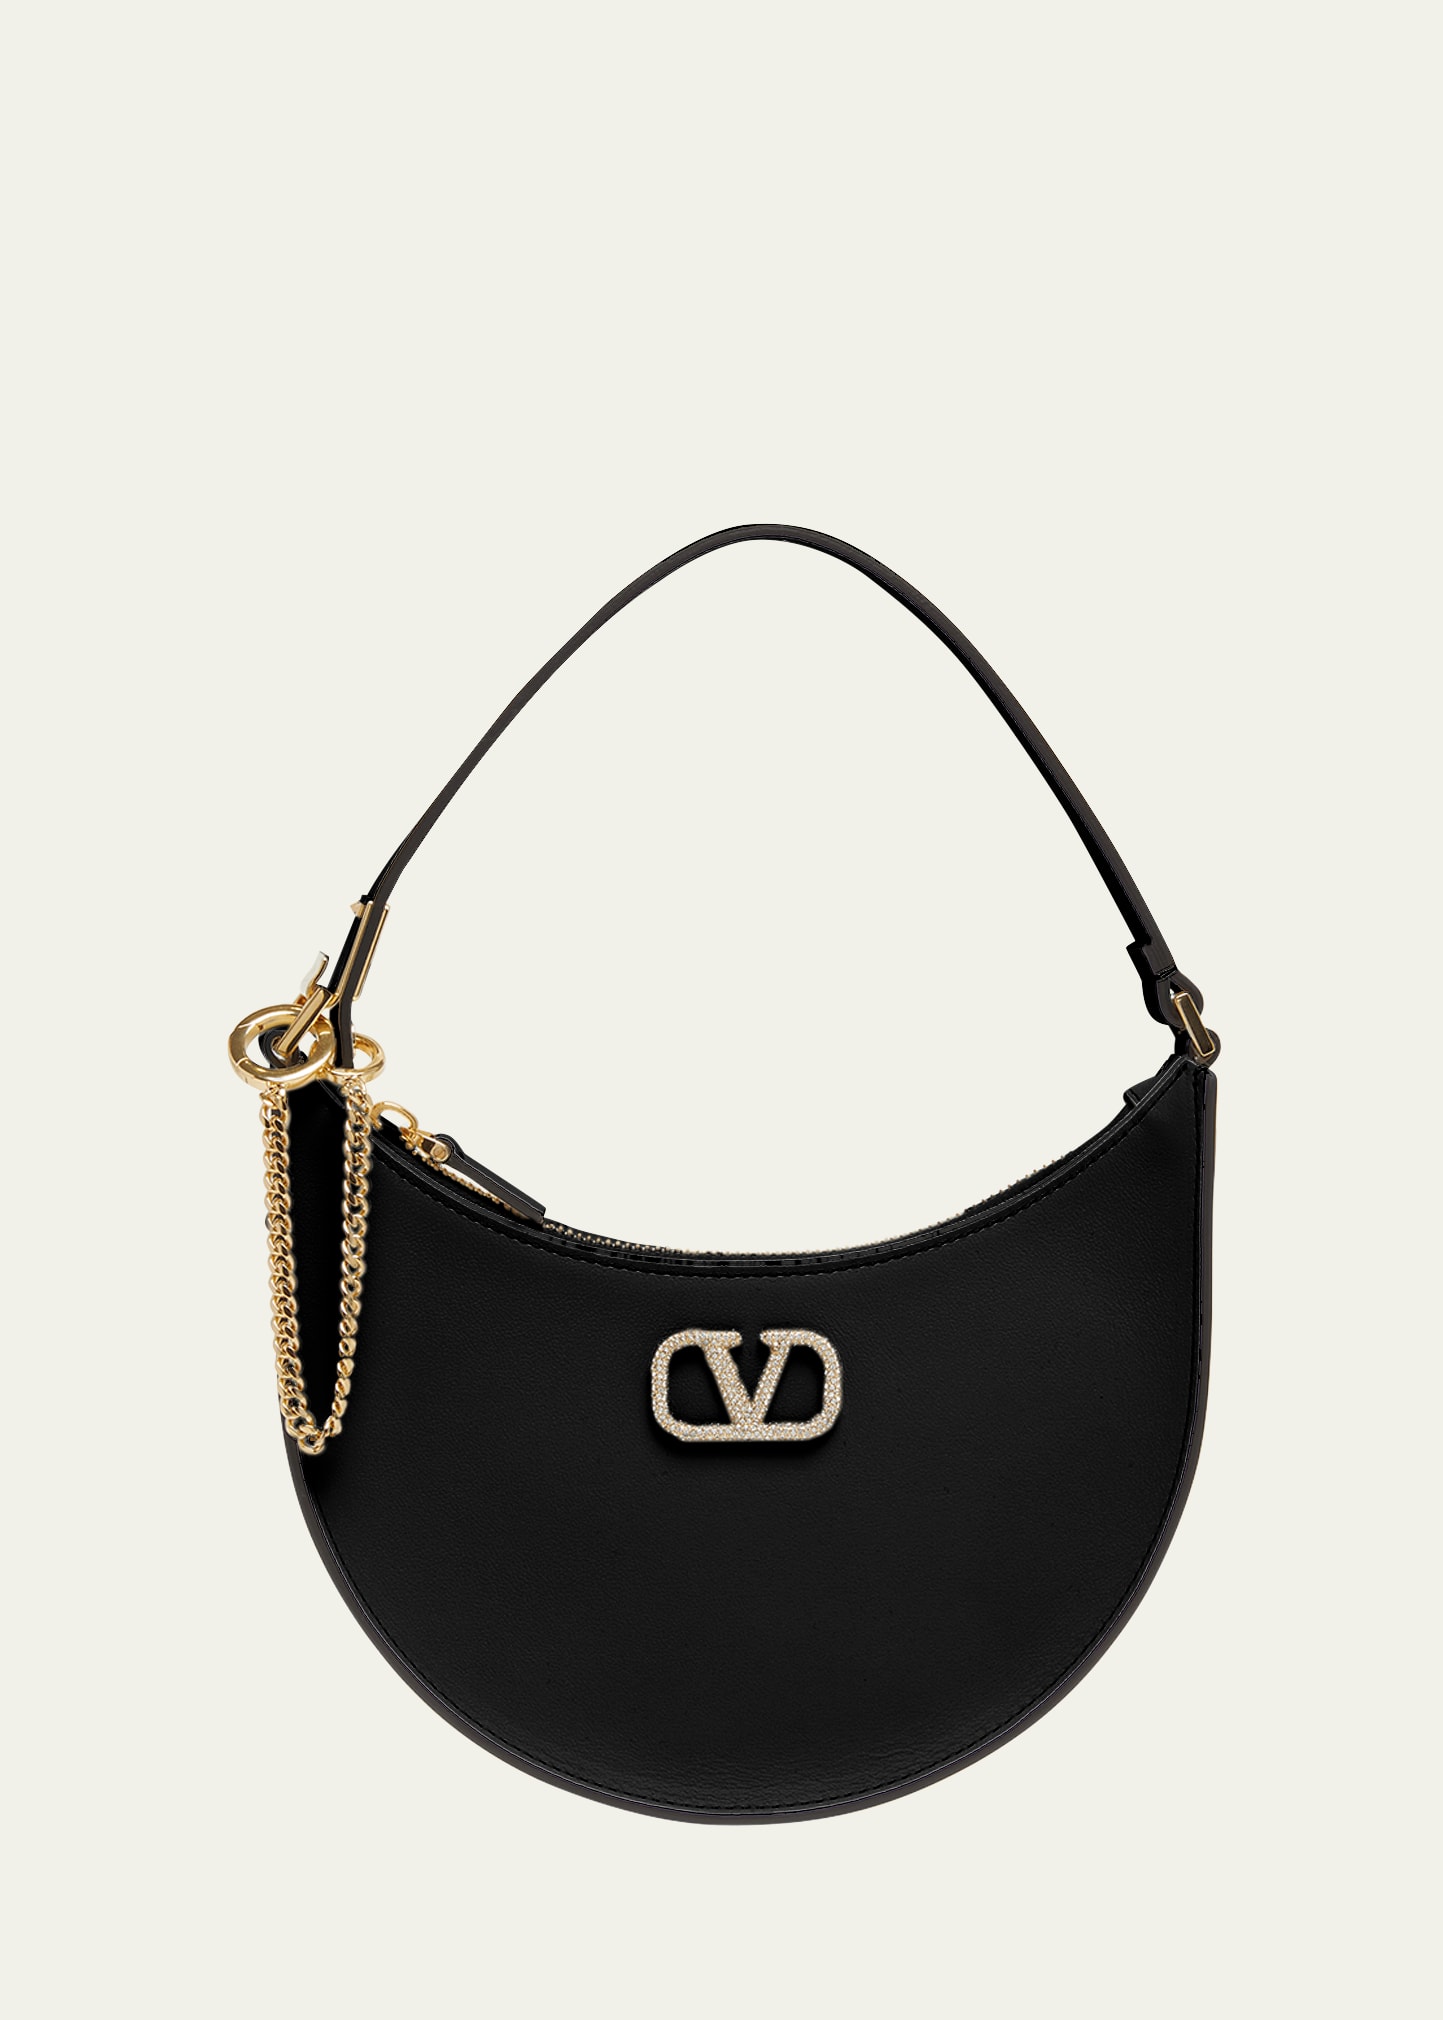 Valentino Garavani Women's Vlogo Moon Mini Hobo Bag In Nappa Leather With Chain In Jv5 Nerojet